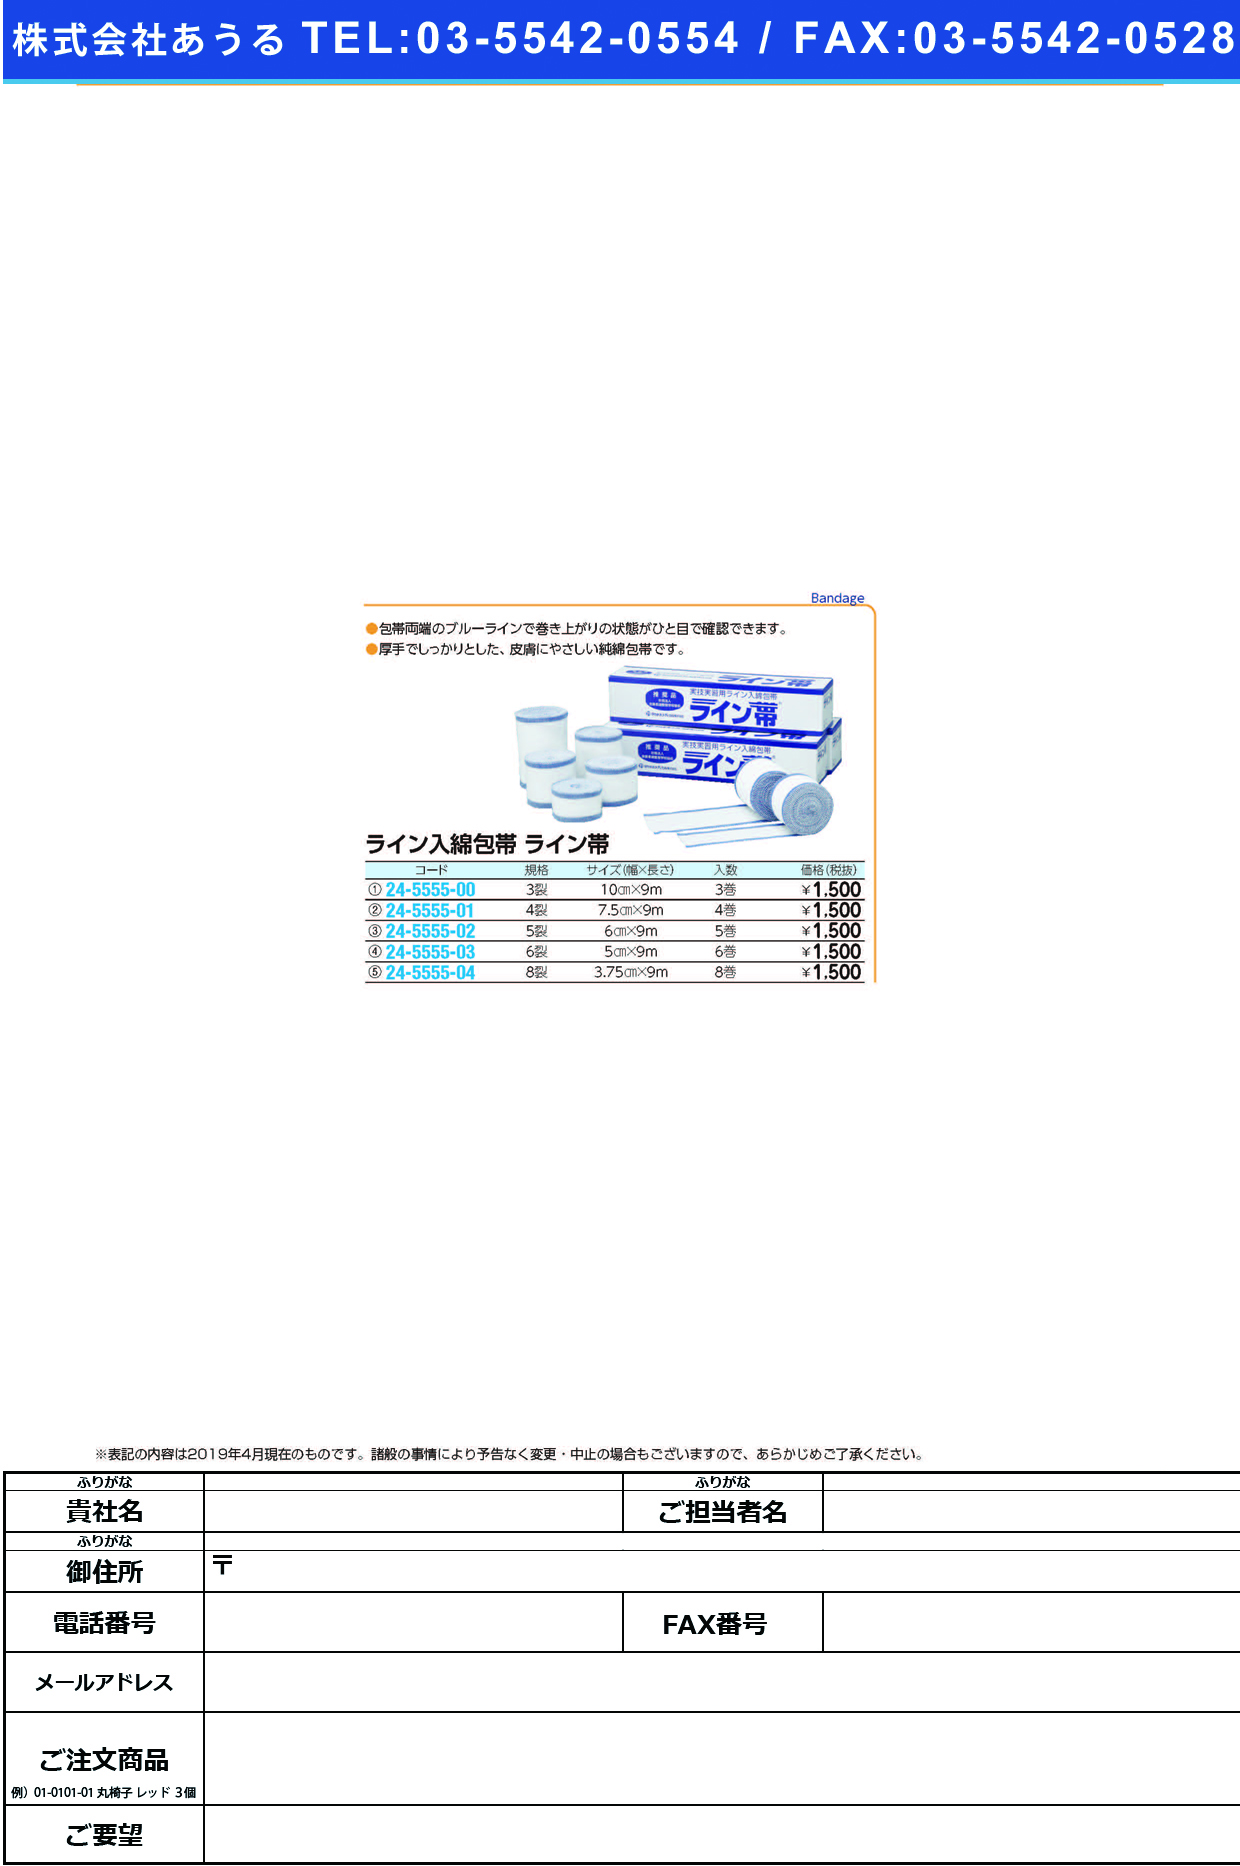 (24-5555-00)ライン帯ＳＰ３裂 TB-3R(10CMX9M)3ｶﾝ ﾗｲﾝﾀｲSP3ﾚﾂ【1箱単位】【2019年カタログ商品】